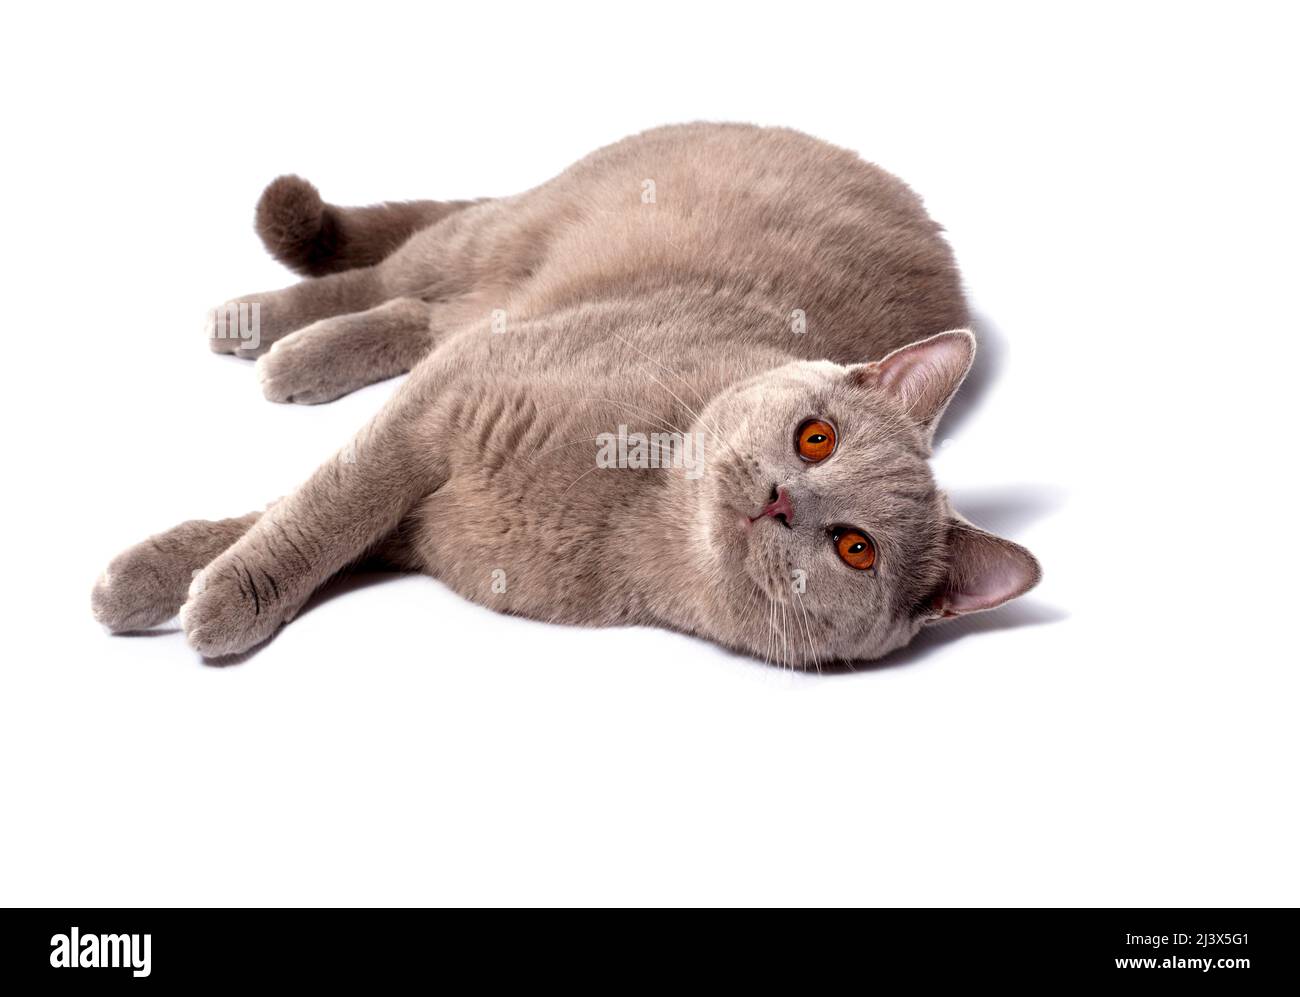 Schottische Fliederkatze, die auf ihrer Seite auf weißem Hintergrund liegt,  isoliertes Bild, schöne Hauskatzen, Katzen im Haus, Haustiere  Stockfotografie - Alamy